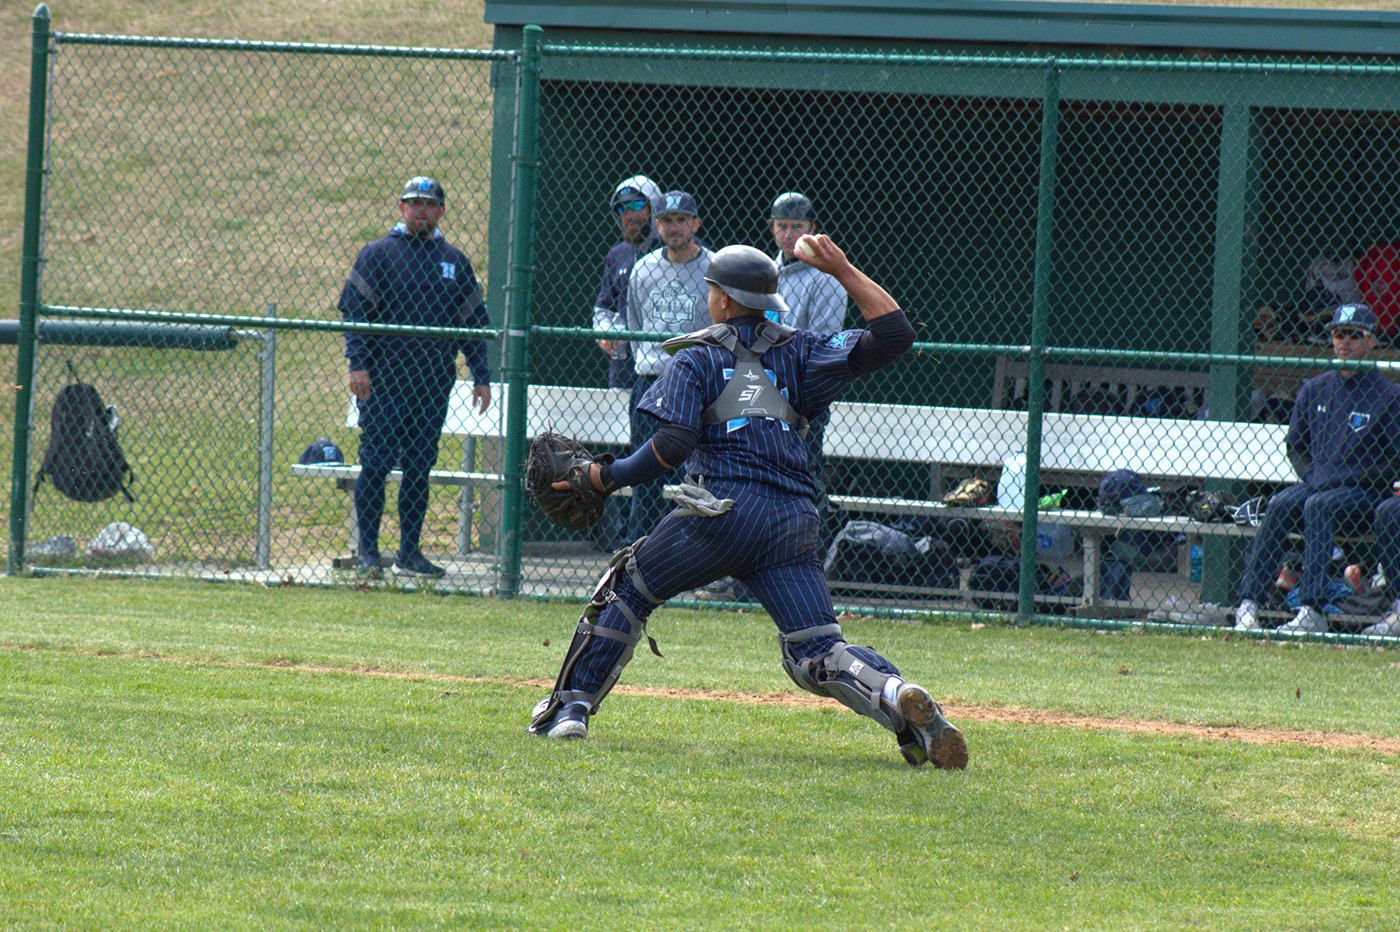 baseball sports sports photography maryland Baseball Photography Canon Photography Cecil County Maryland Photographer